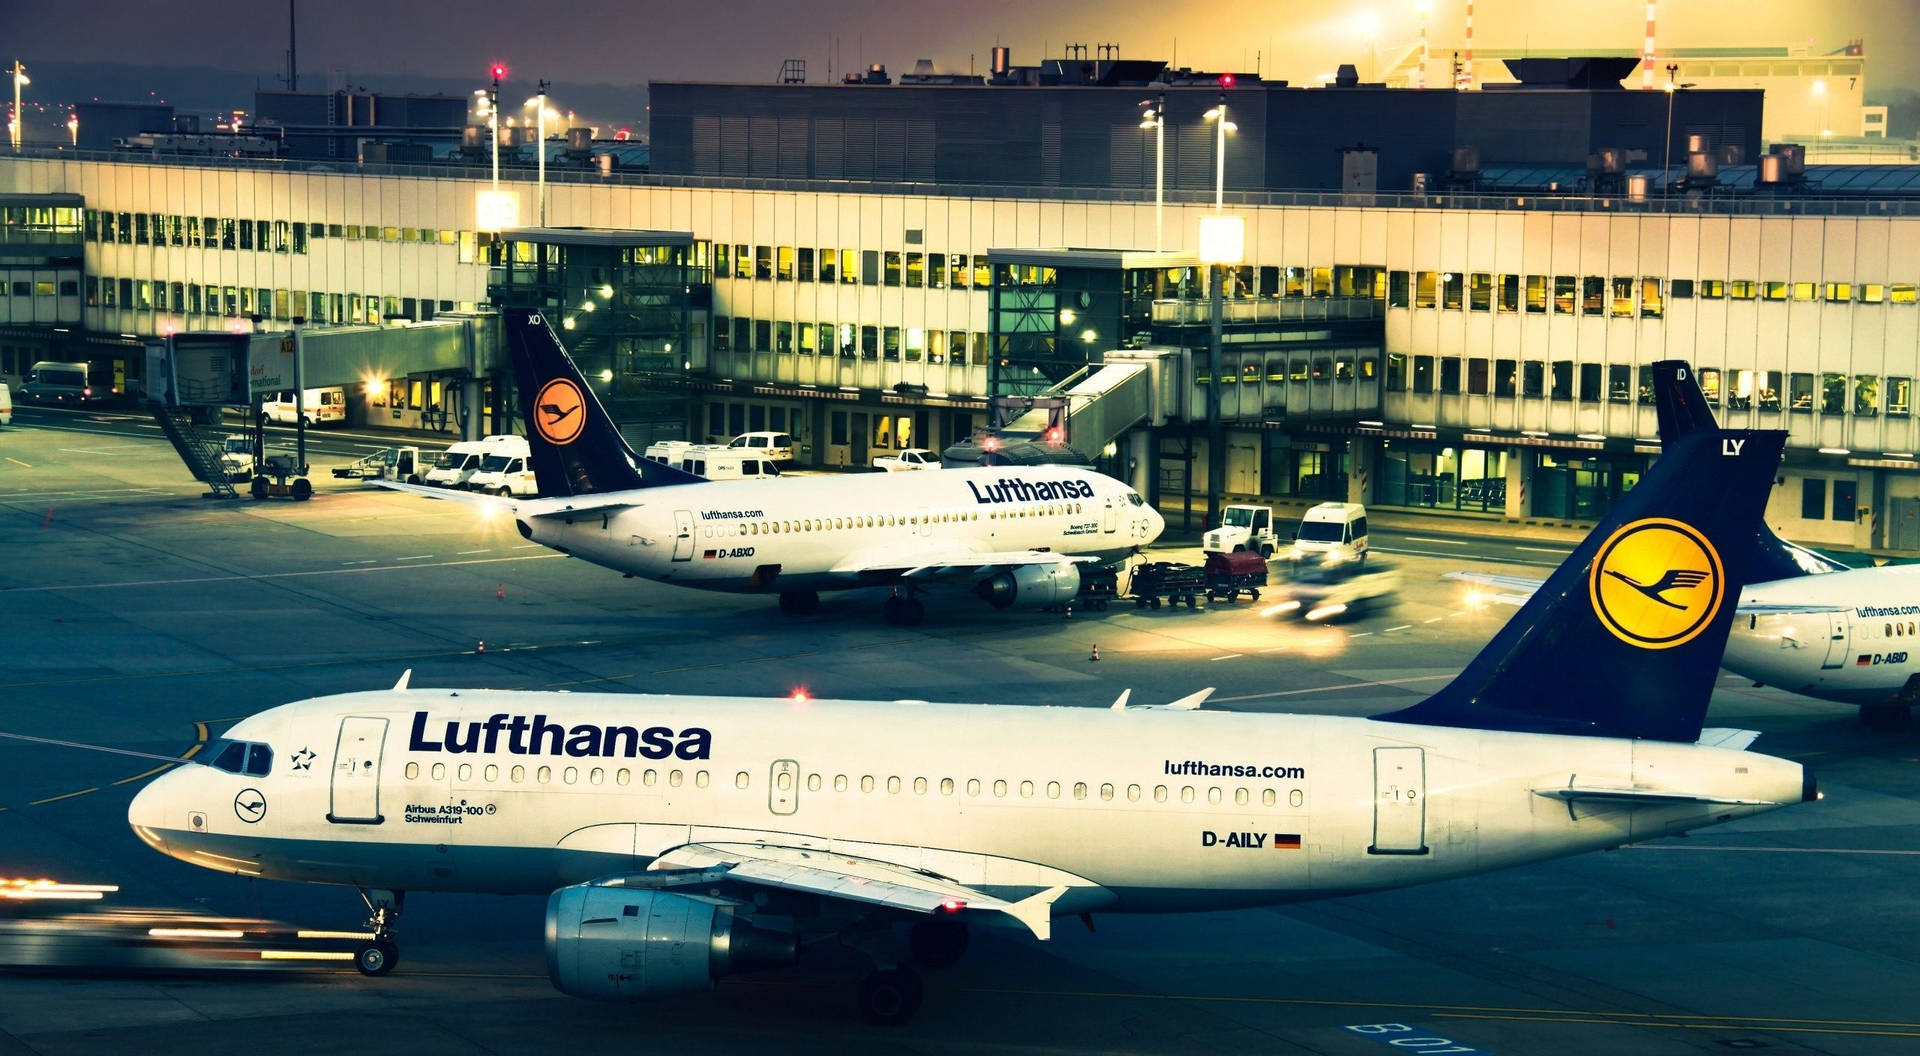 Fleet Of Deutsche Lufthansa Airplanes Picture